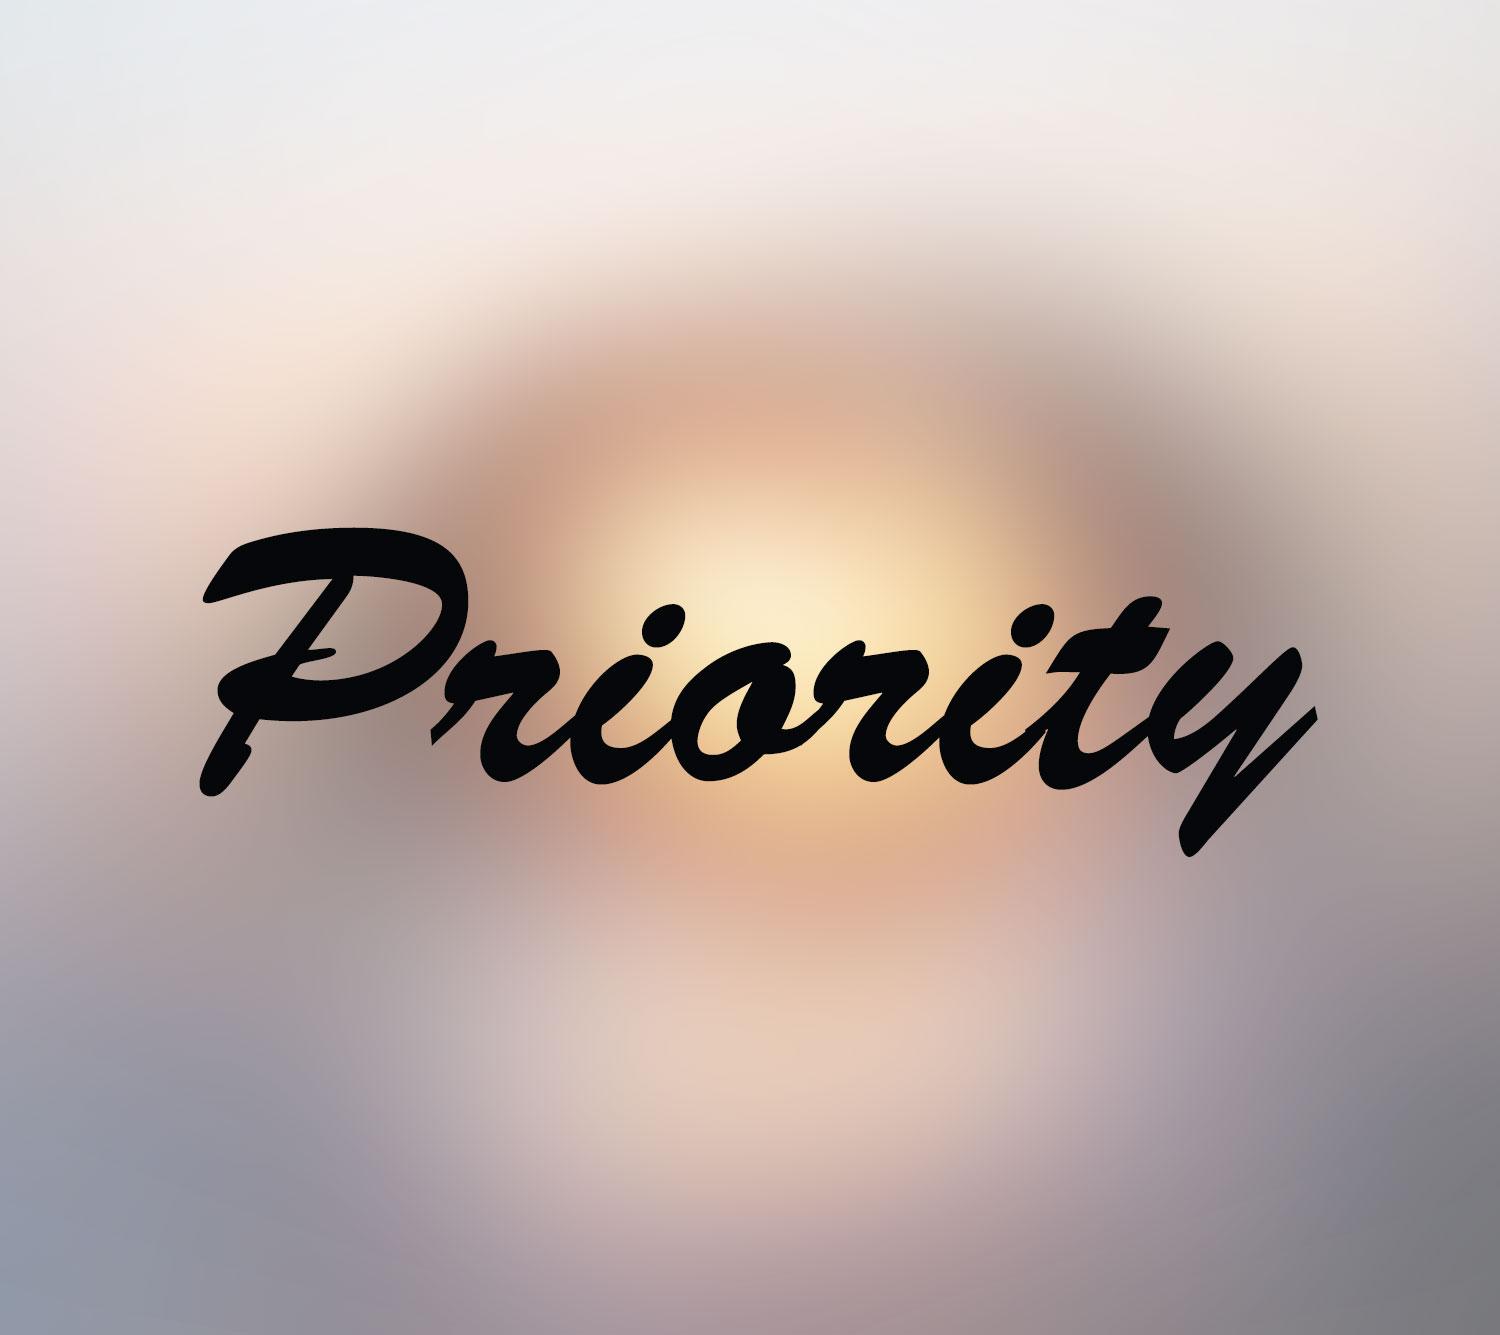 priority - 1nikah.com